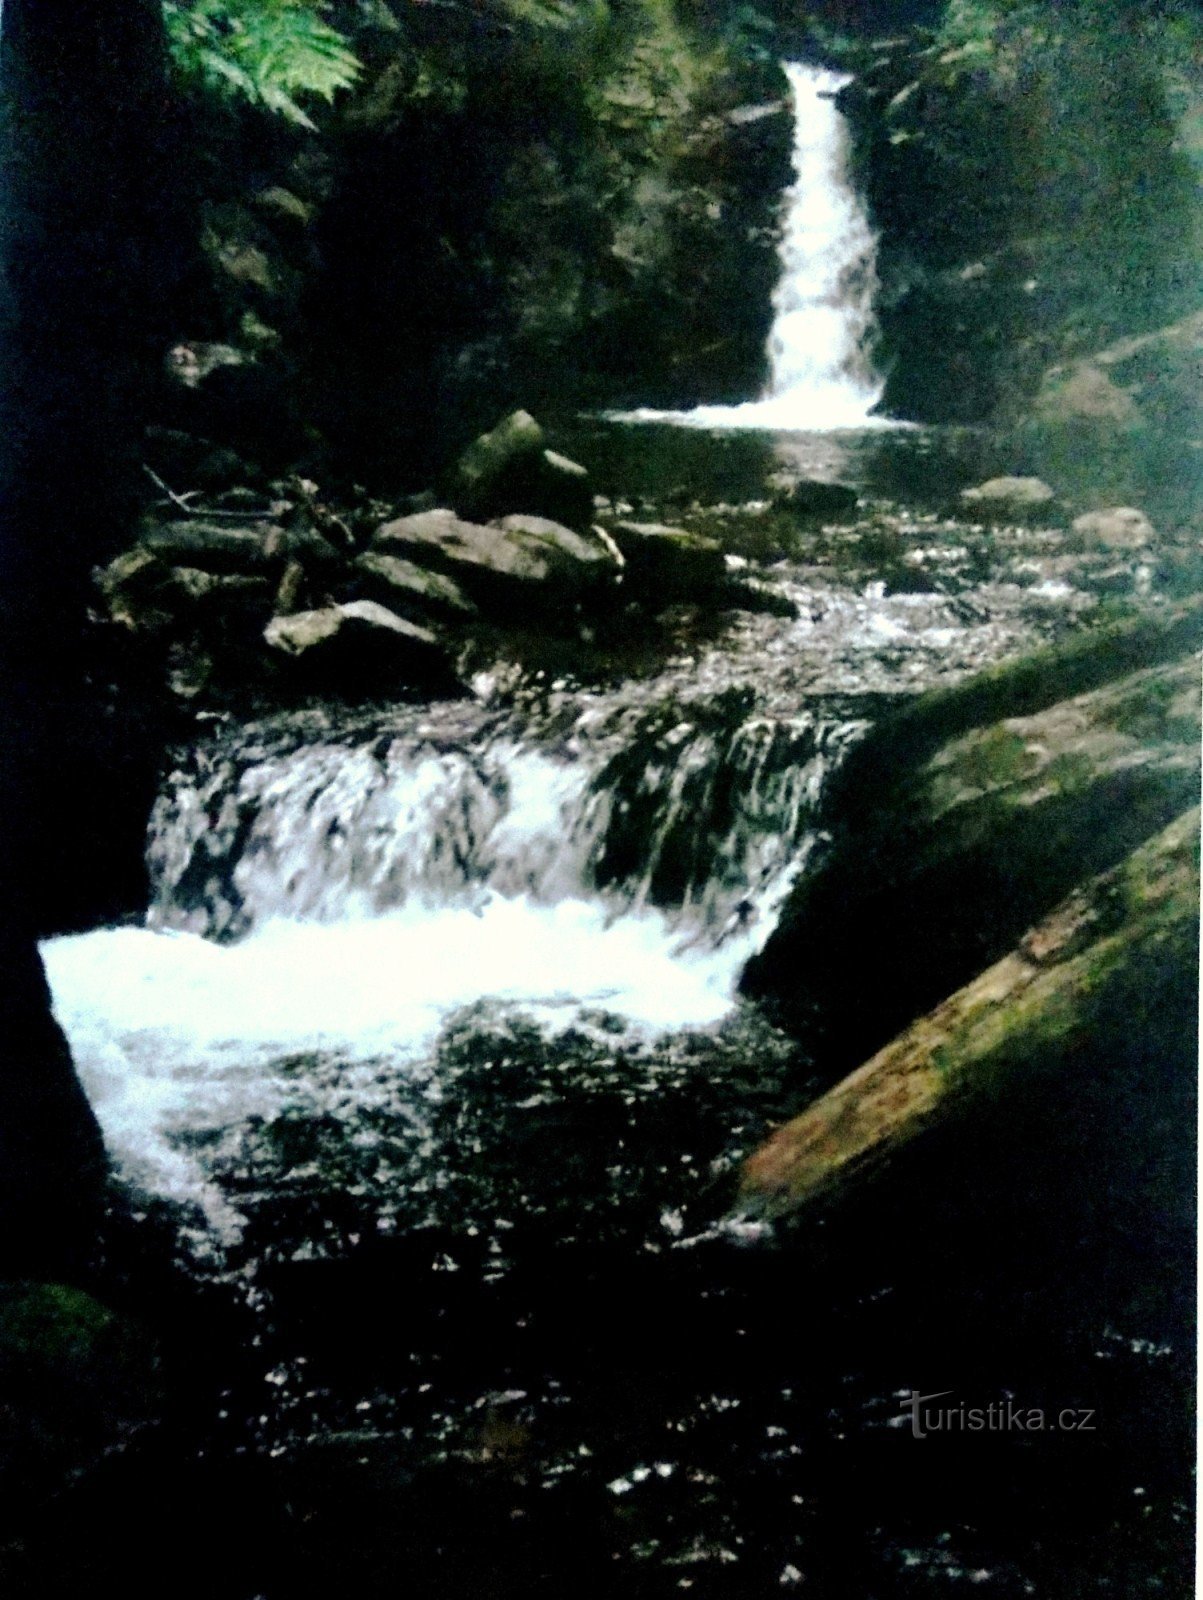 リフレブ山脈のロマンチックなナイズナー滝へ